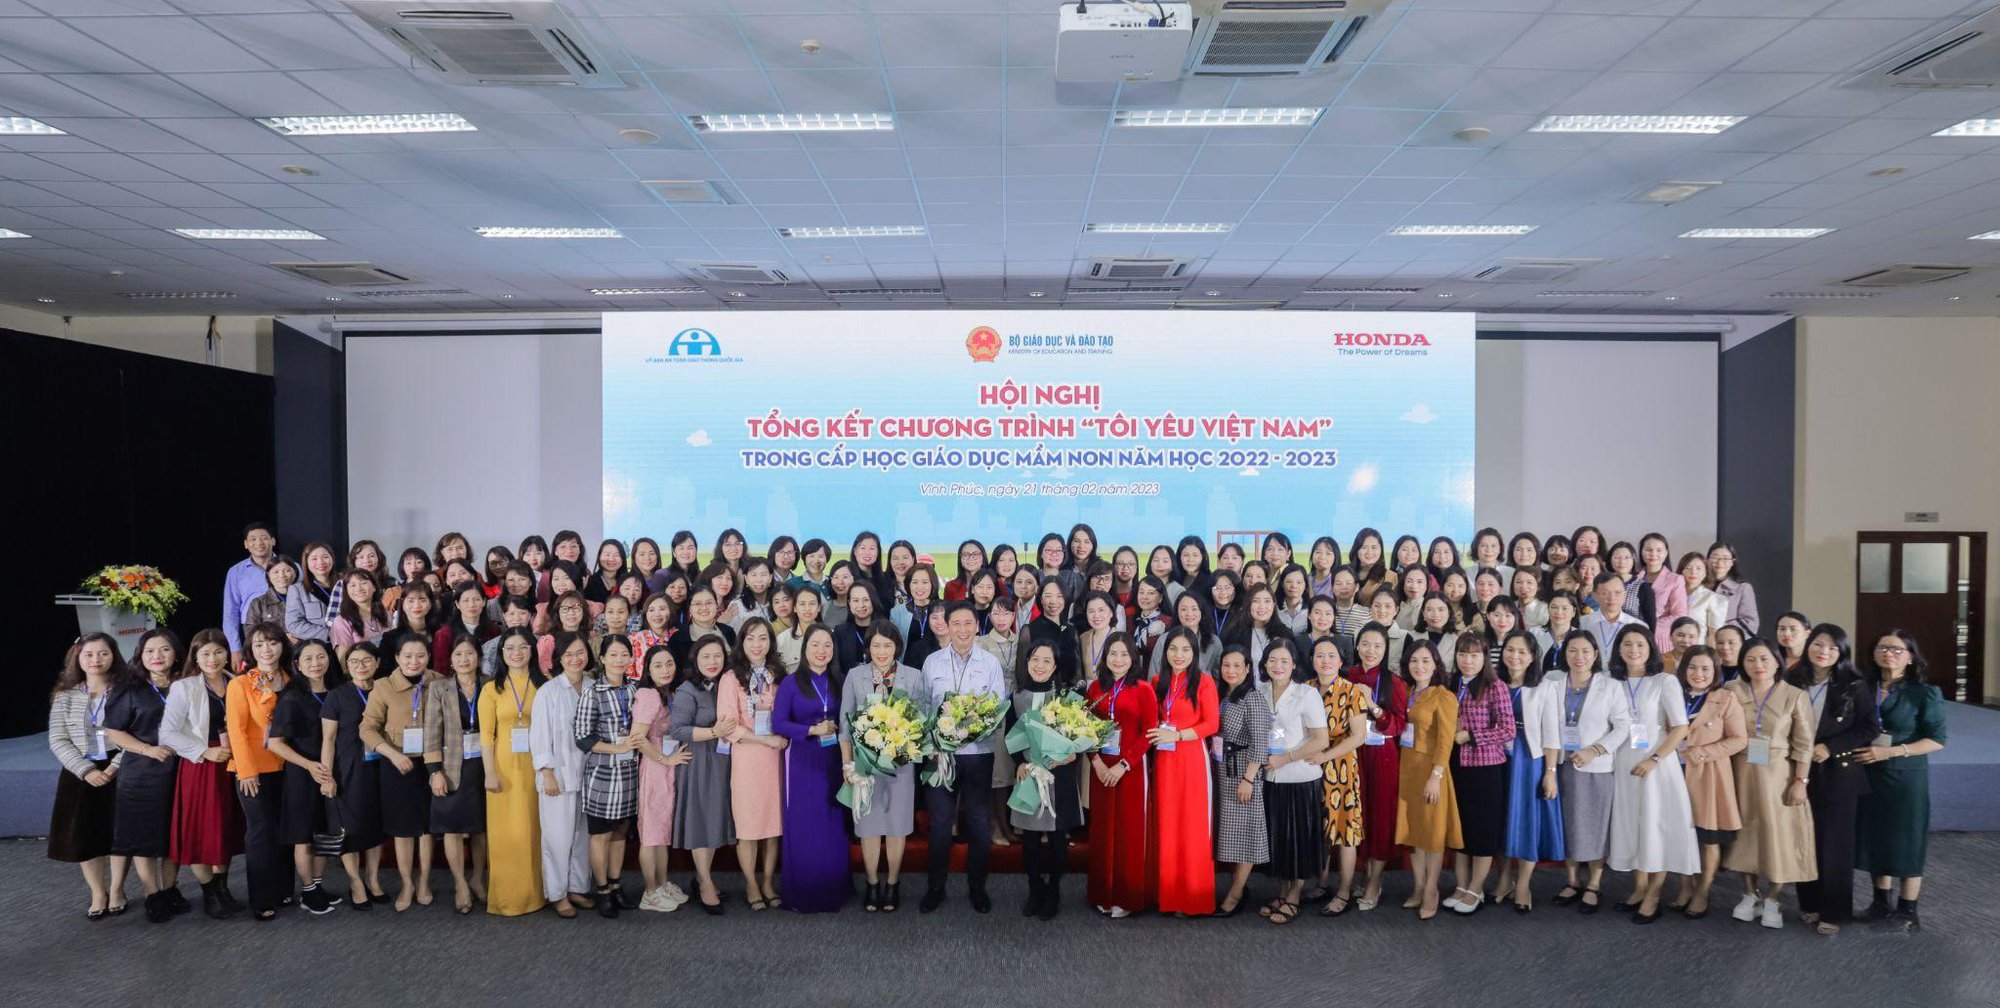 Honda Việt Nam tổ chức Hội nghị tổng kết triển khai chương trình &quot;Tôi yêu Việt Nam&quot; trong cấp học giáo dục mầm non năm học 2022 - 2023 - Ảnh 1.